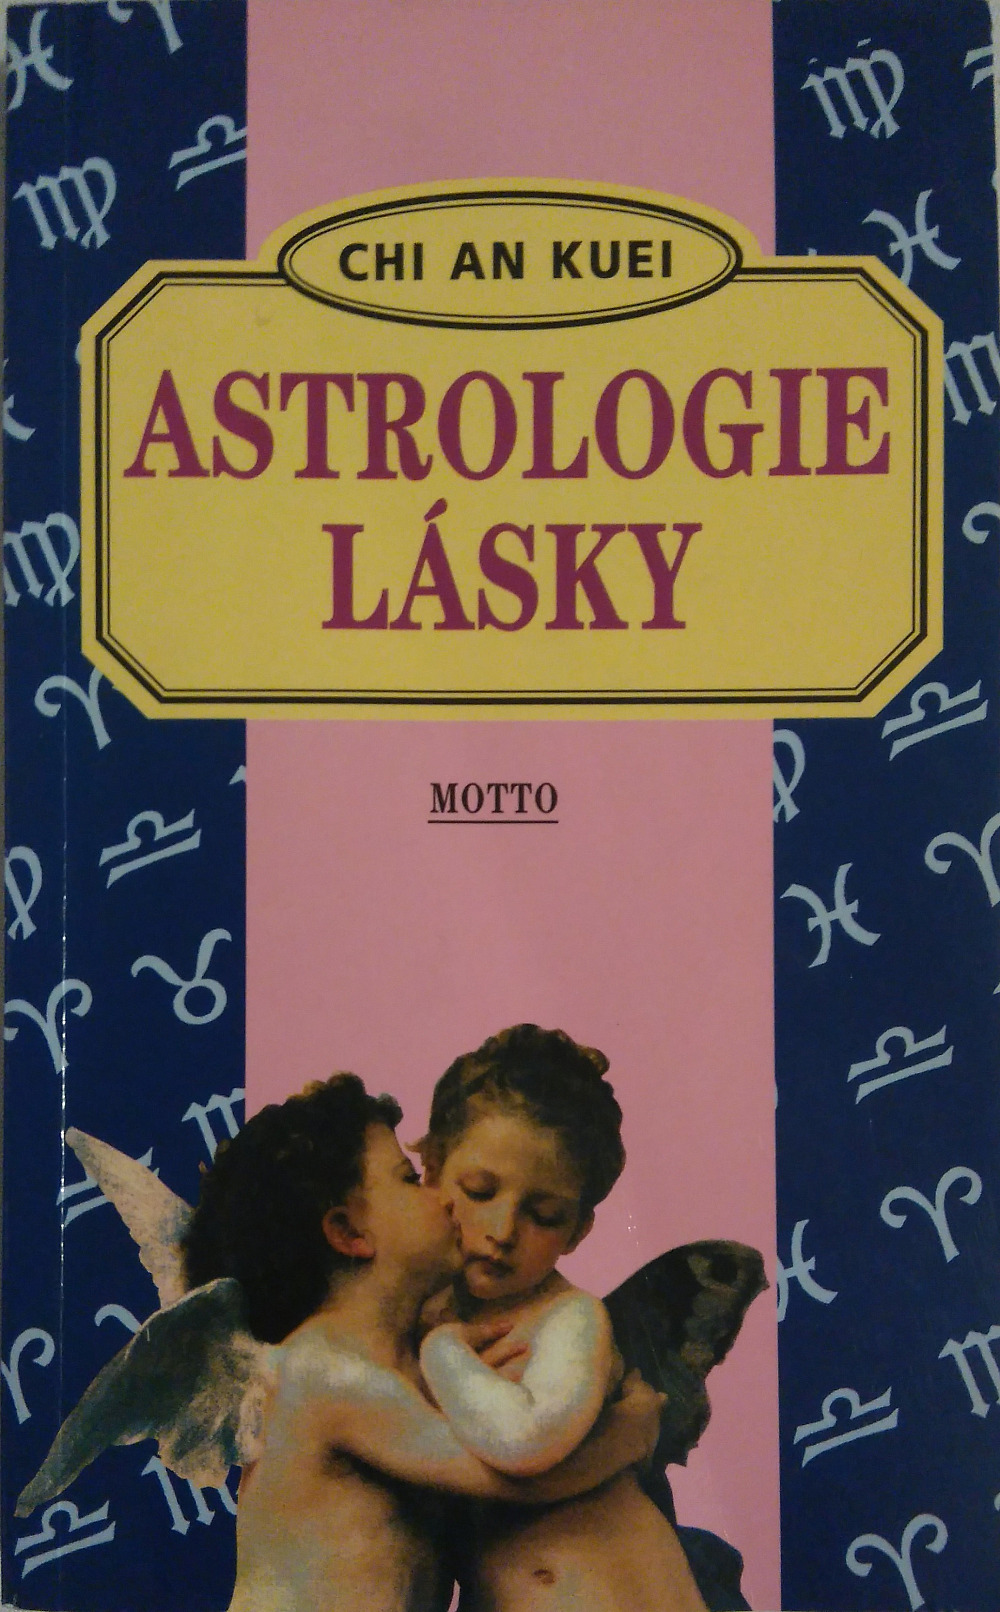 Astrologie lásky